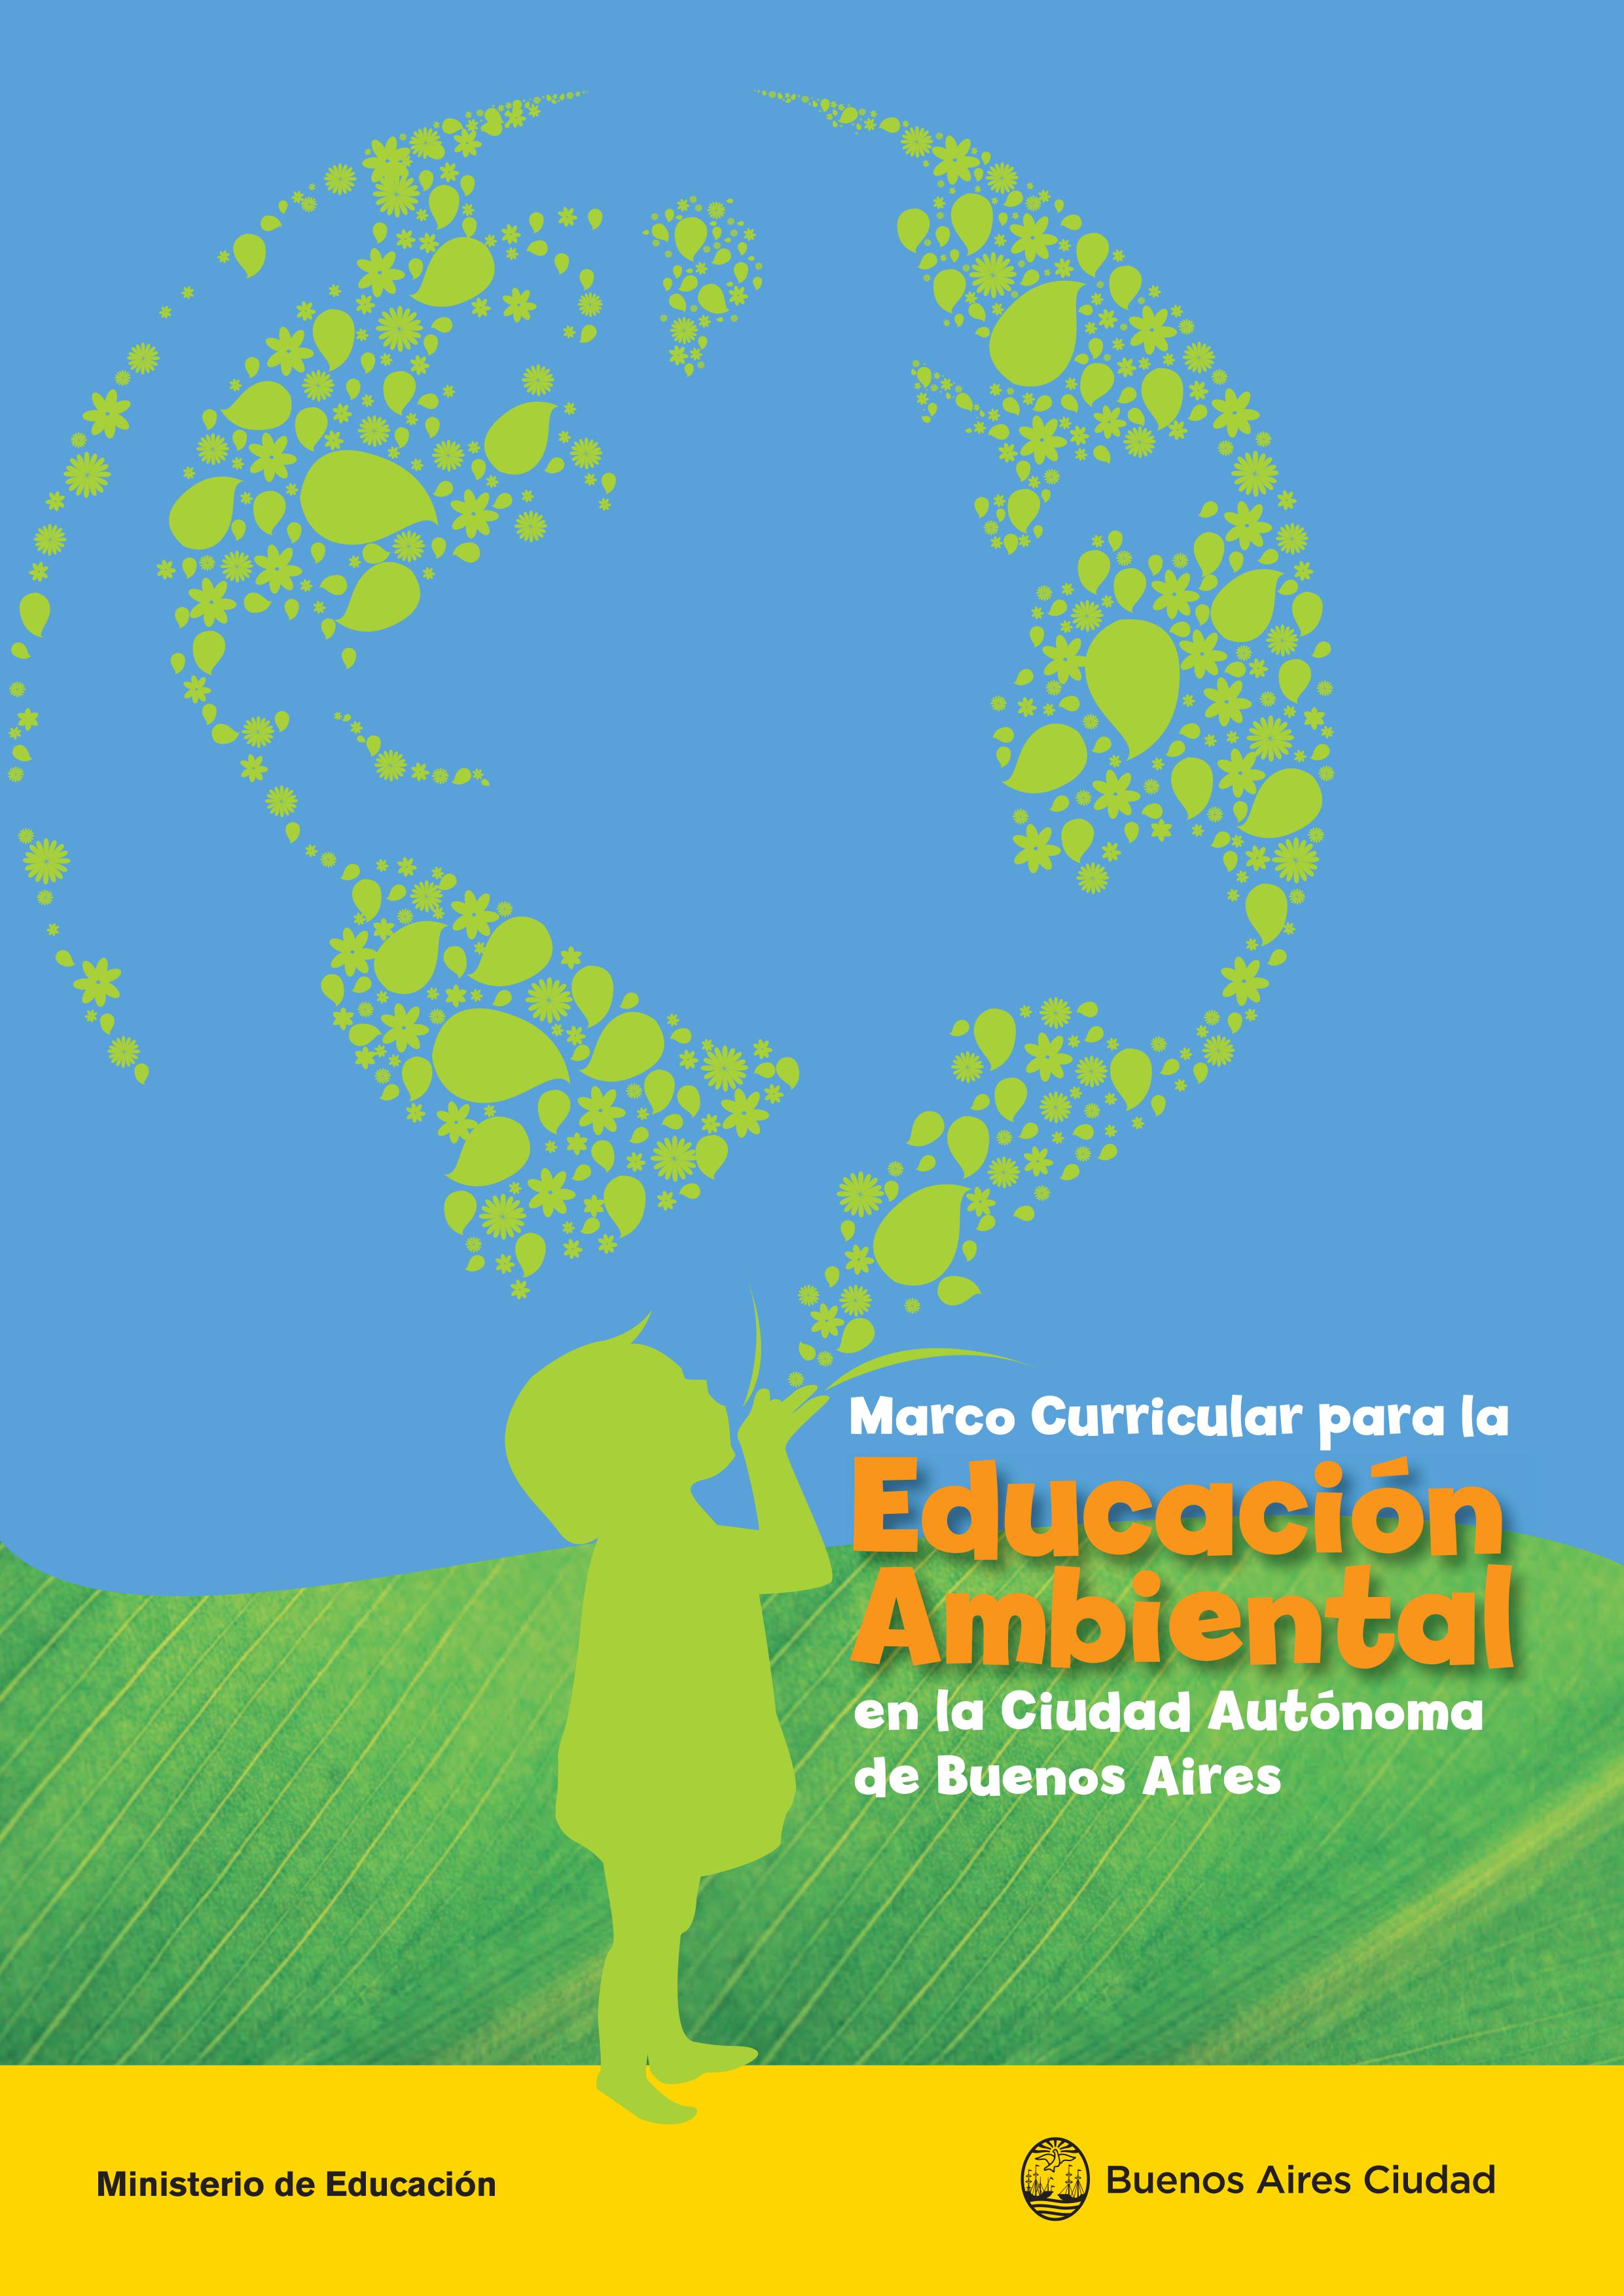 Marco Curricular para la Educación Ambiental en la Ciudad Autónoma de Buenos Aires